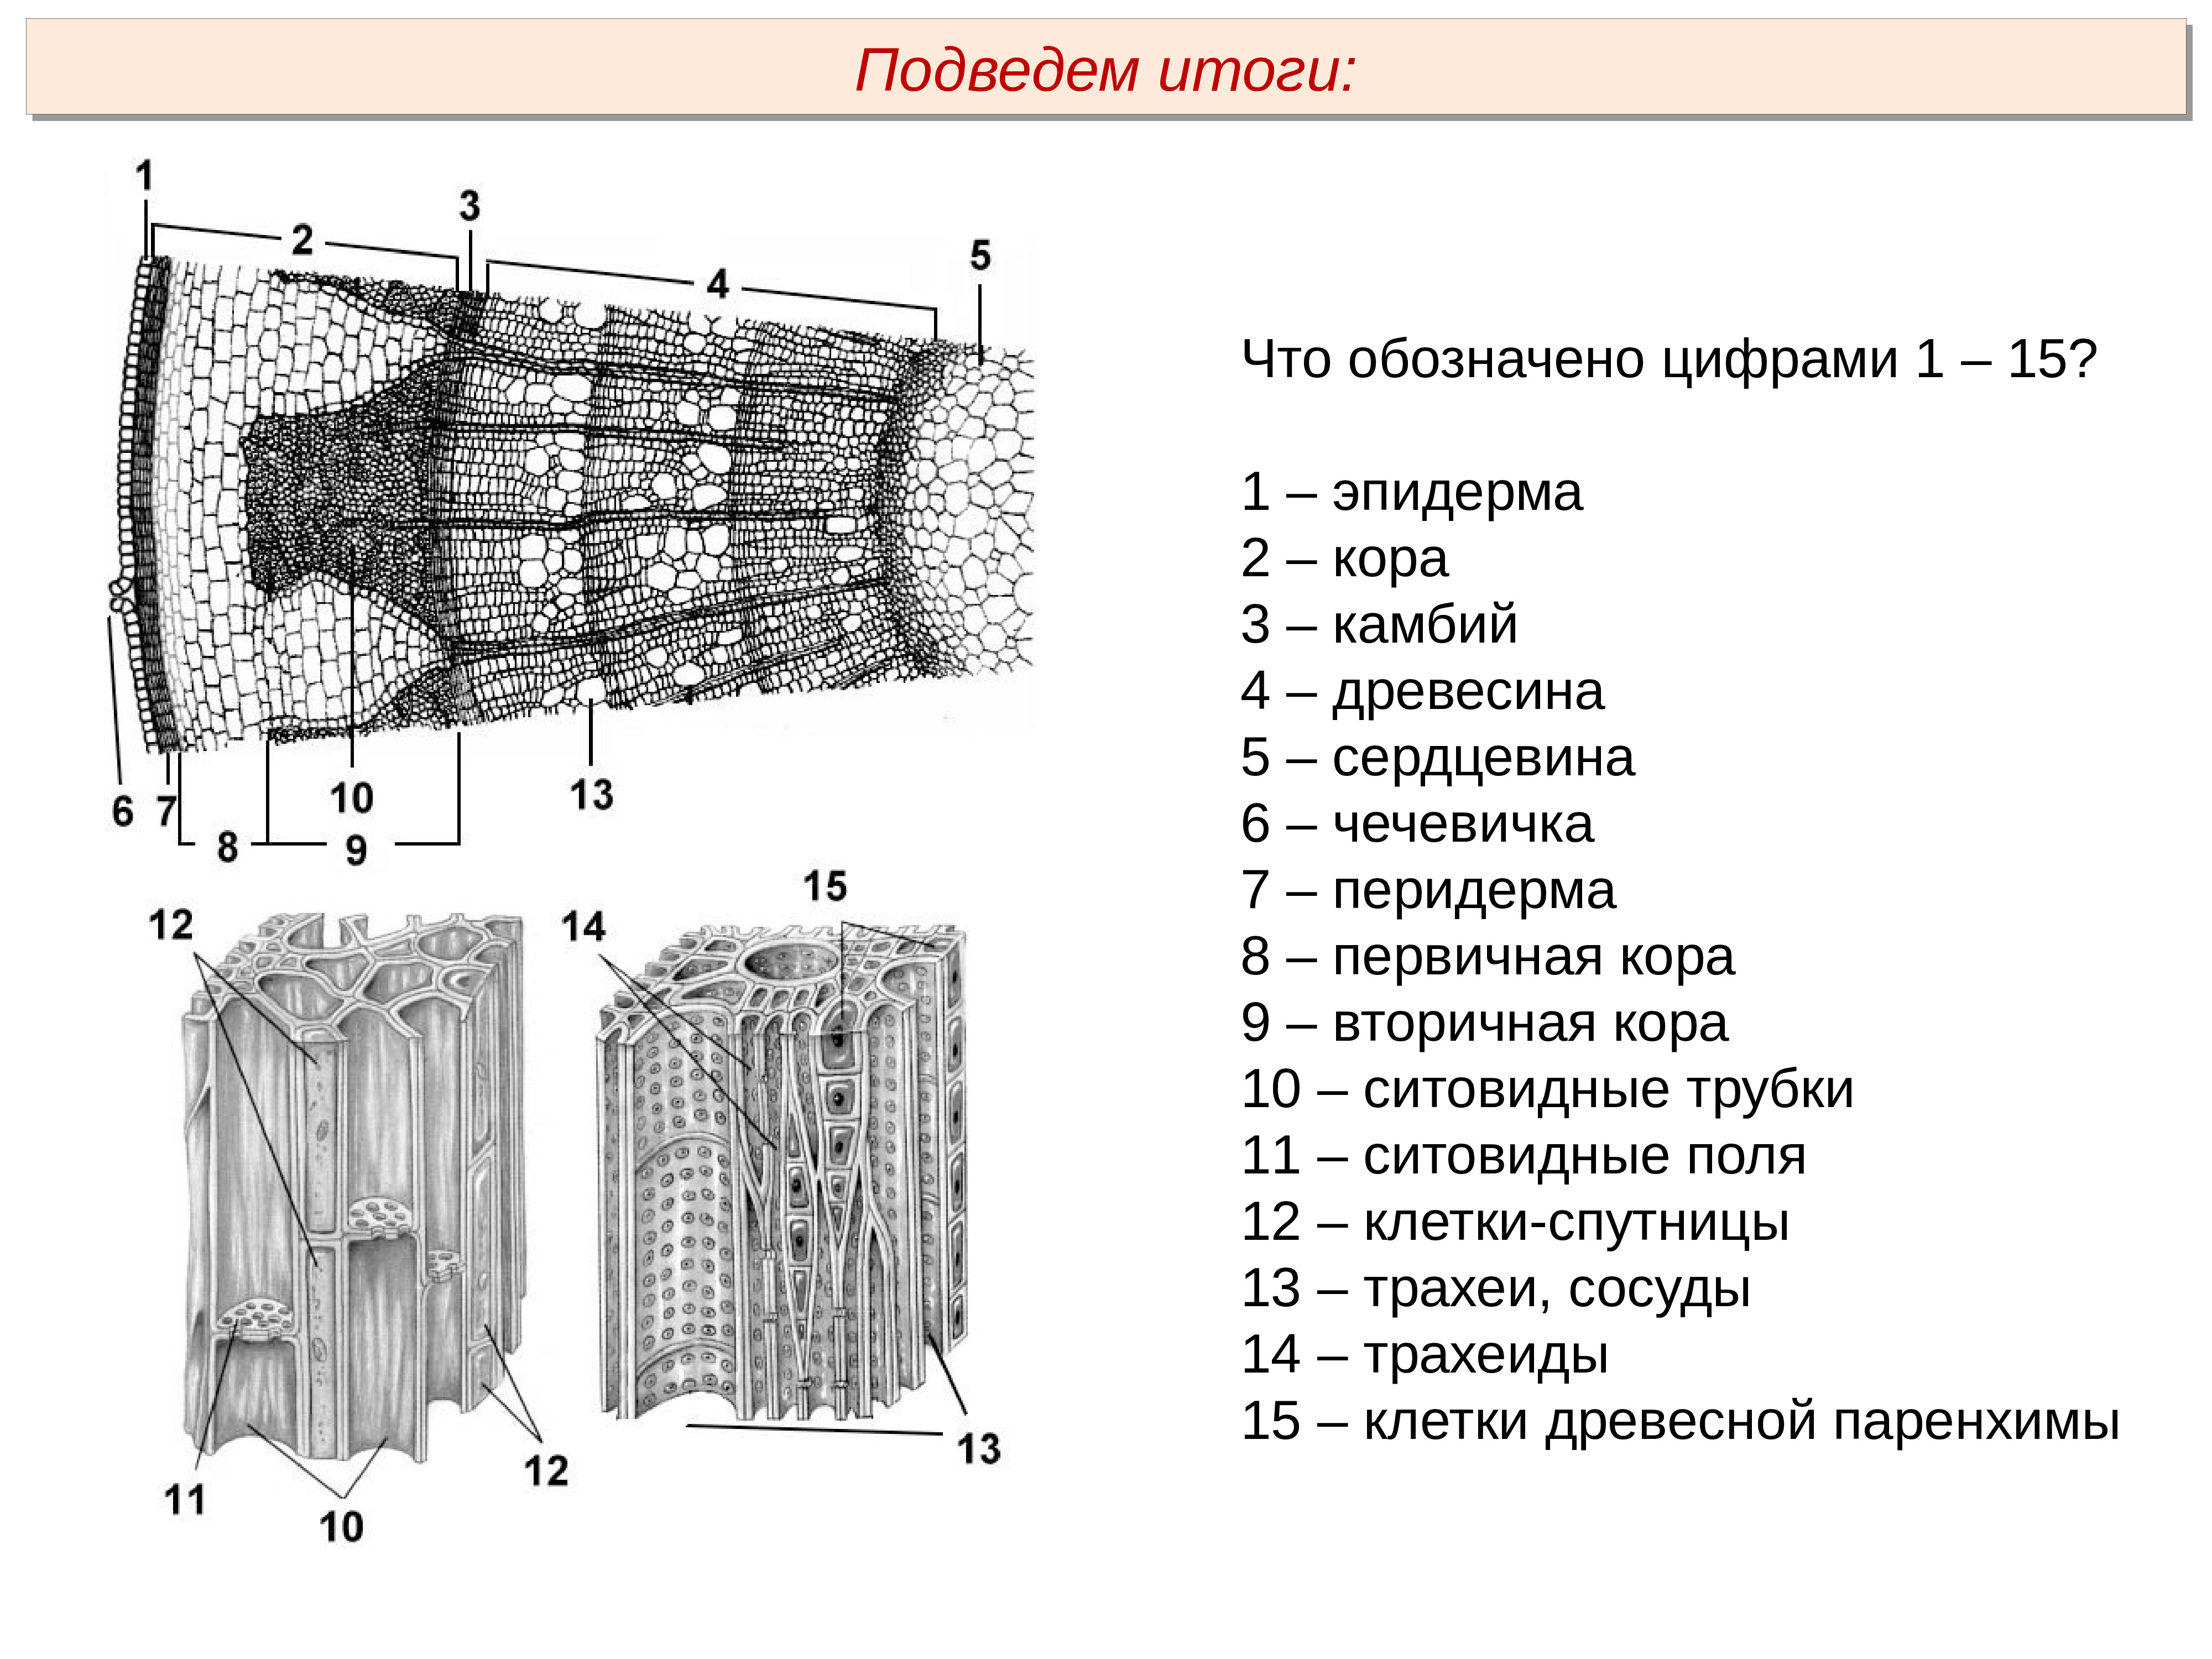 Ткань камбия биология 6 класс. Клетки камбия характеристика. Внутреннее строение стебля. Клетки камбия рисунок. Растительные ткани камбий.